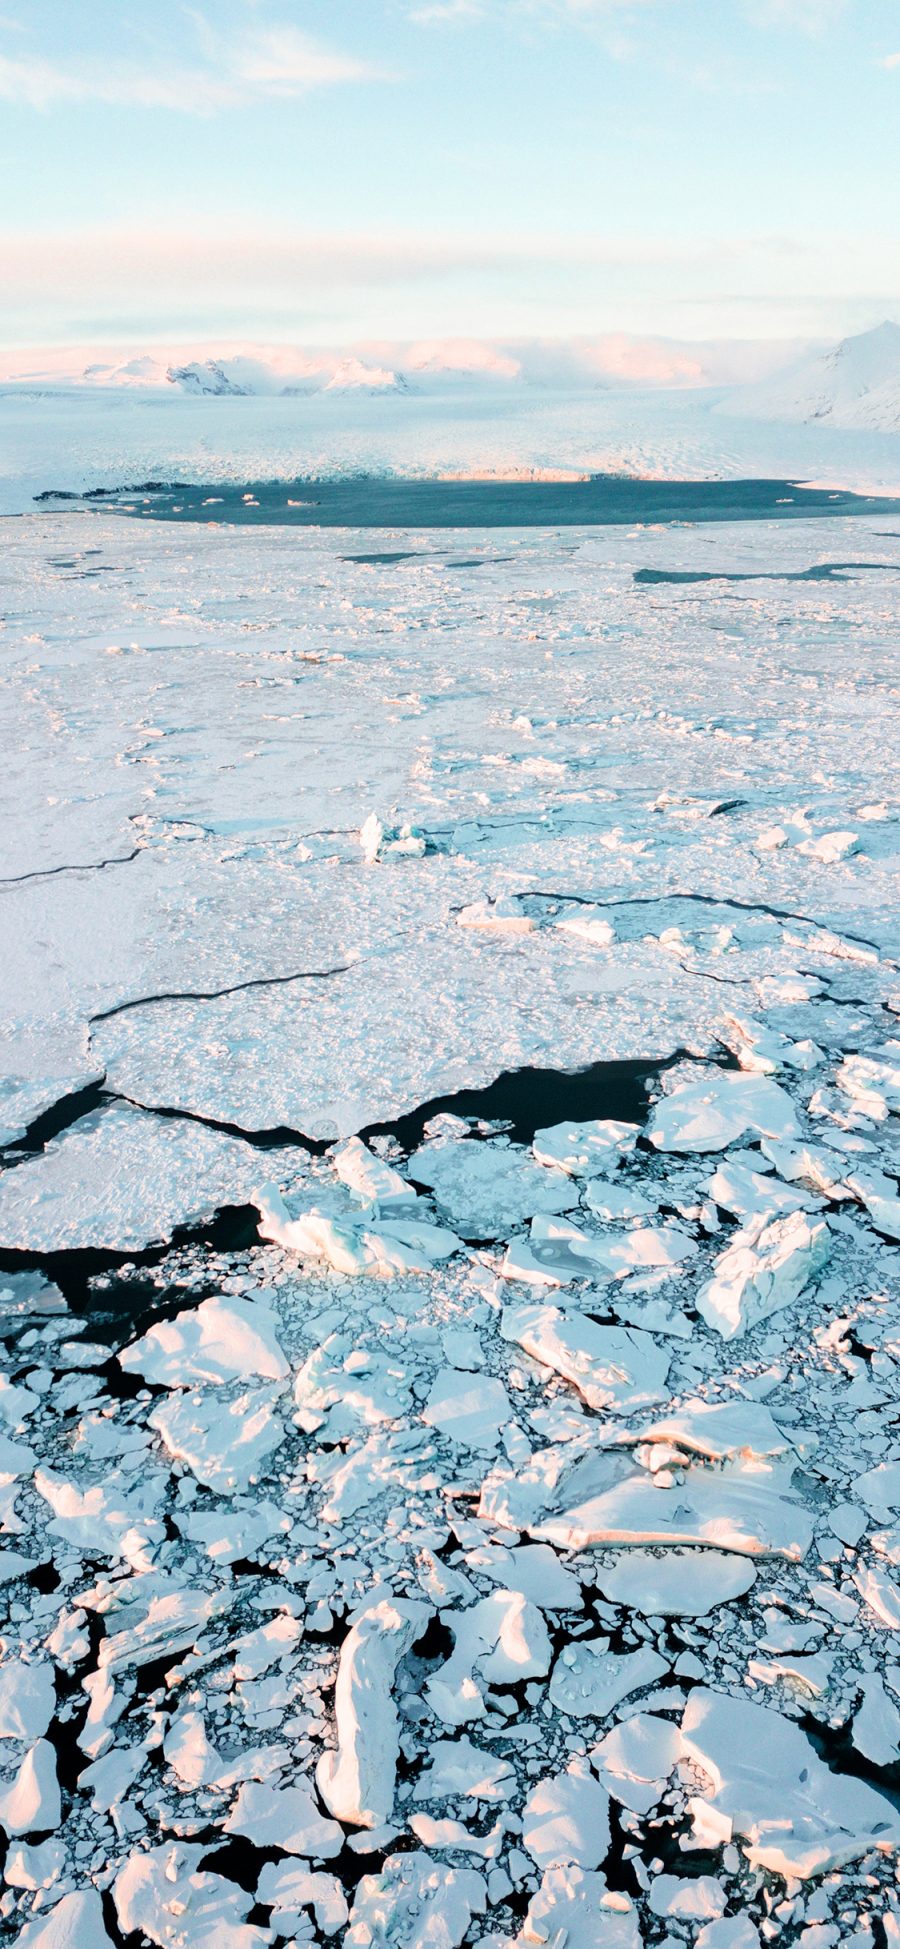 [2436×1125]海洋 结冰 冰川 寒冷 苹果手机壁纸图片